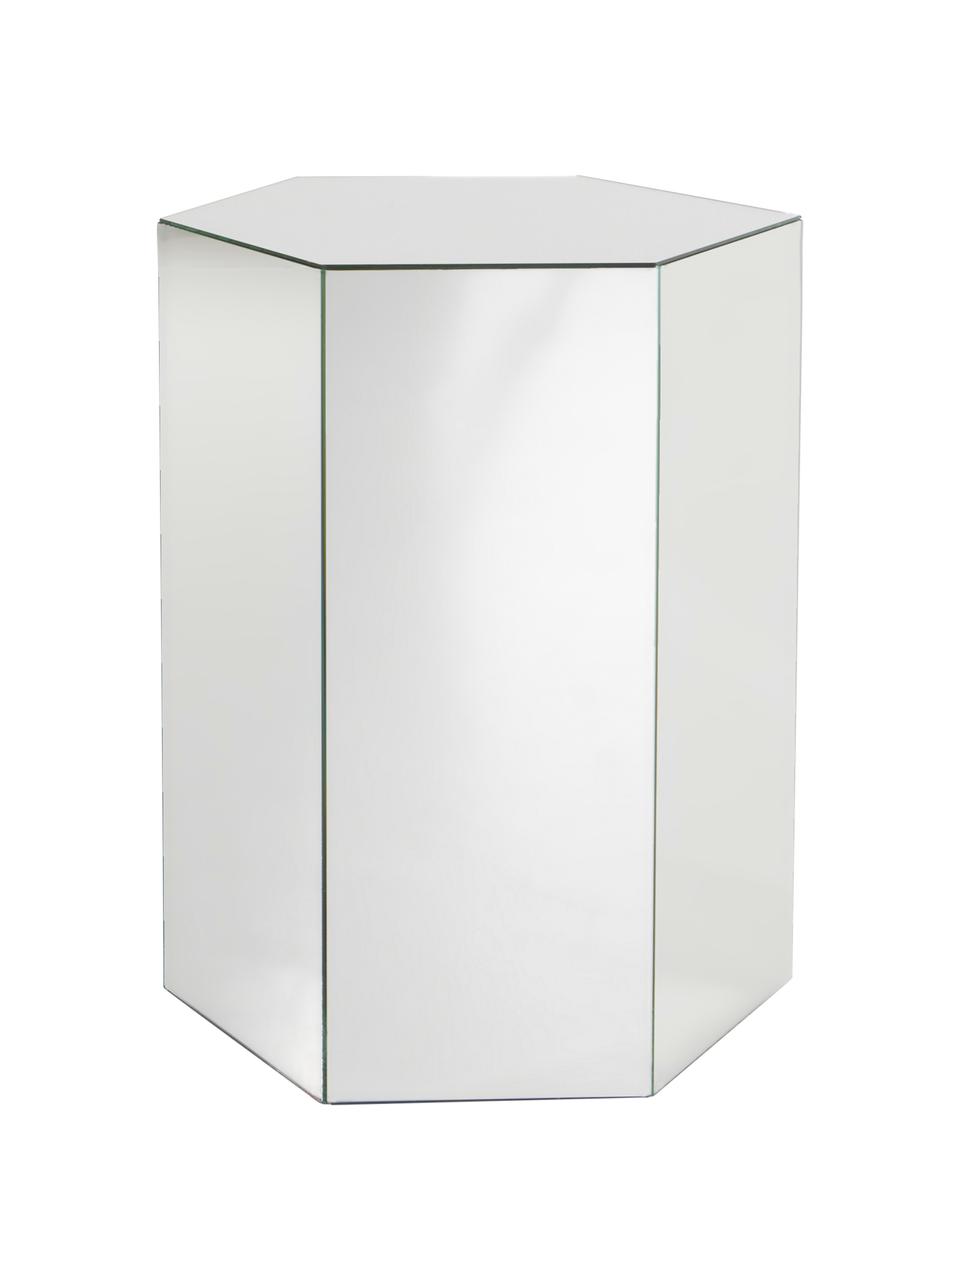 Glazen bijzettafel Schrapen met spiegeleffect, Vezelplaat met gemiddelde dichtheid (MDF), spiegelglas, Spiegelglas, B 40 cm x H 60 cm